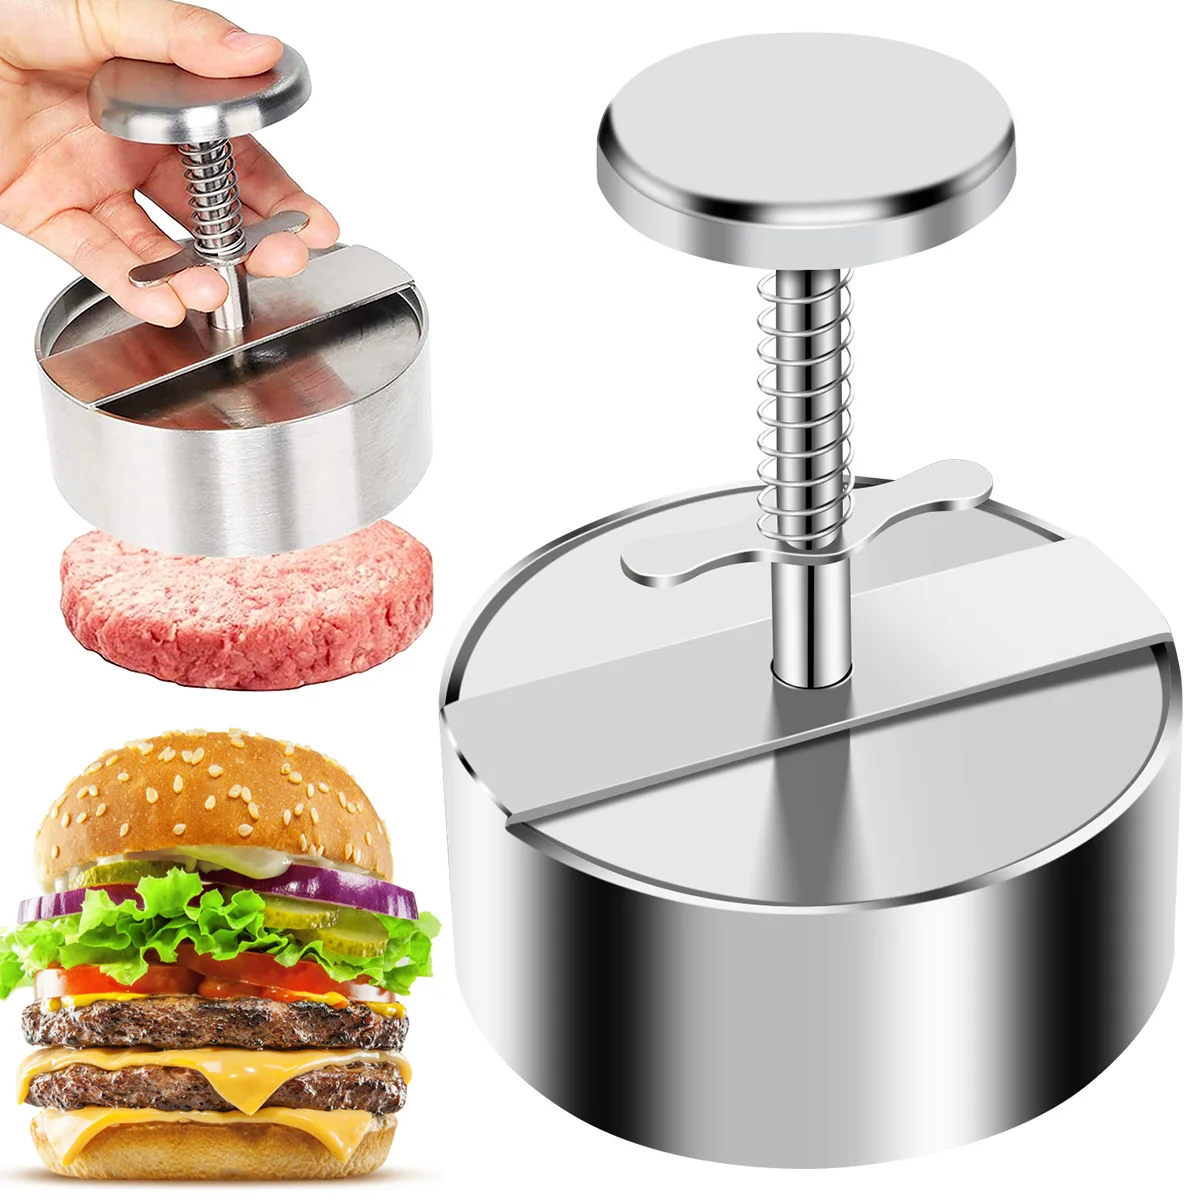 

Пресс для гамбургеров машина для приготовления котлеты для гамбургера, антипригарный пресс для бургеров для приготовления мяса и тонких га...